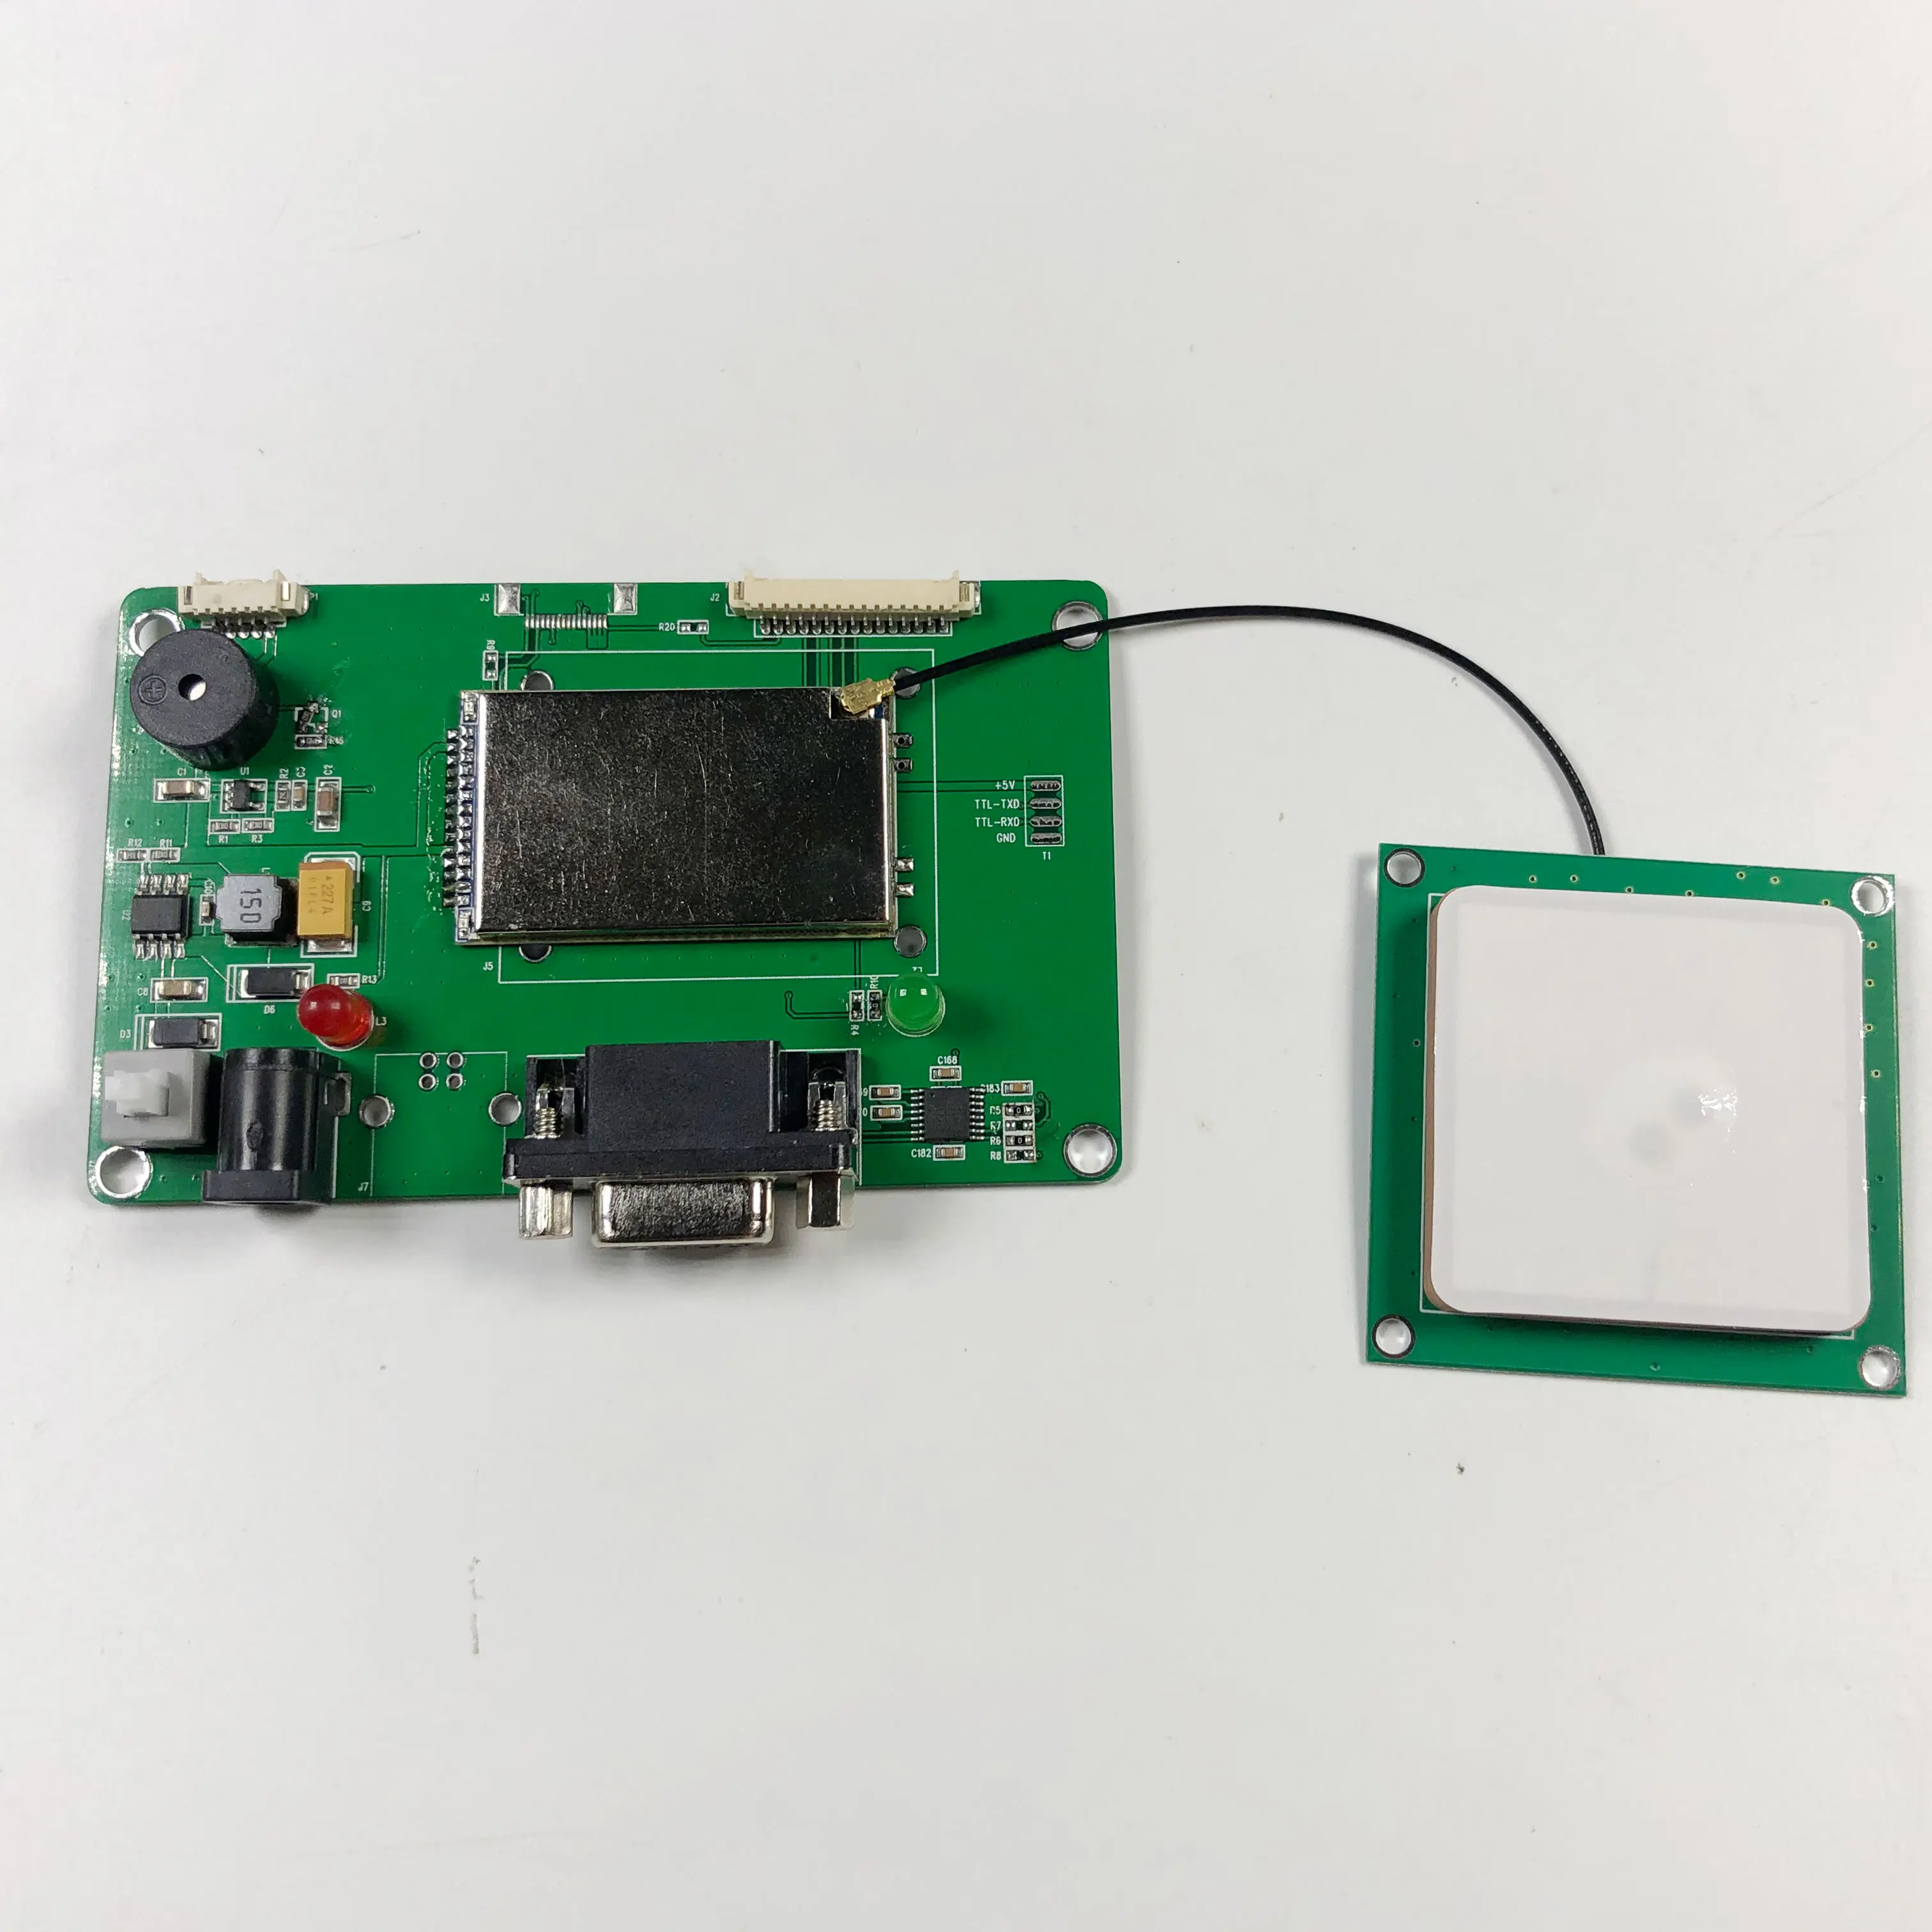 915 МГц UHF RFID модуль разработки с керамической антенной для Android смартфон разработки наборы